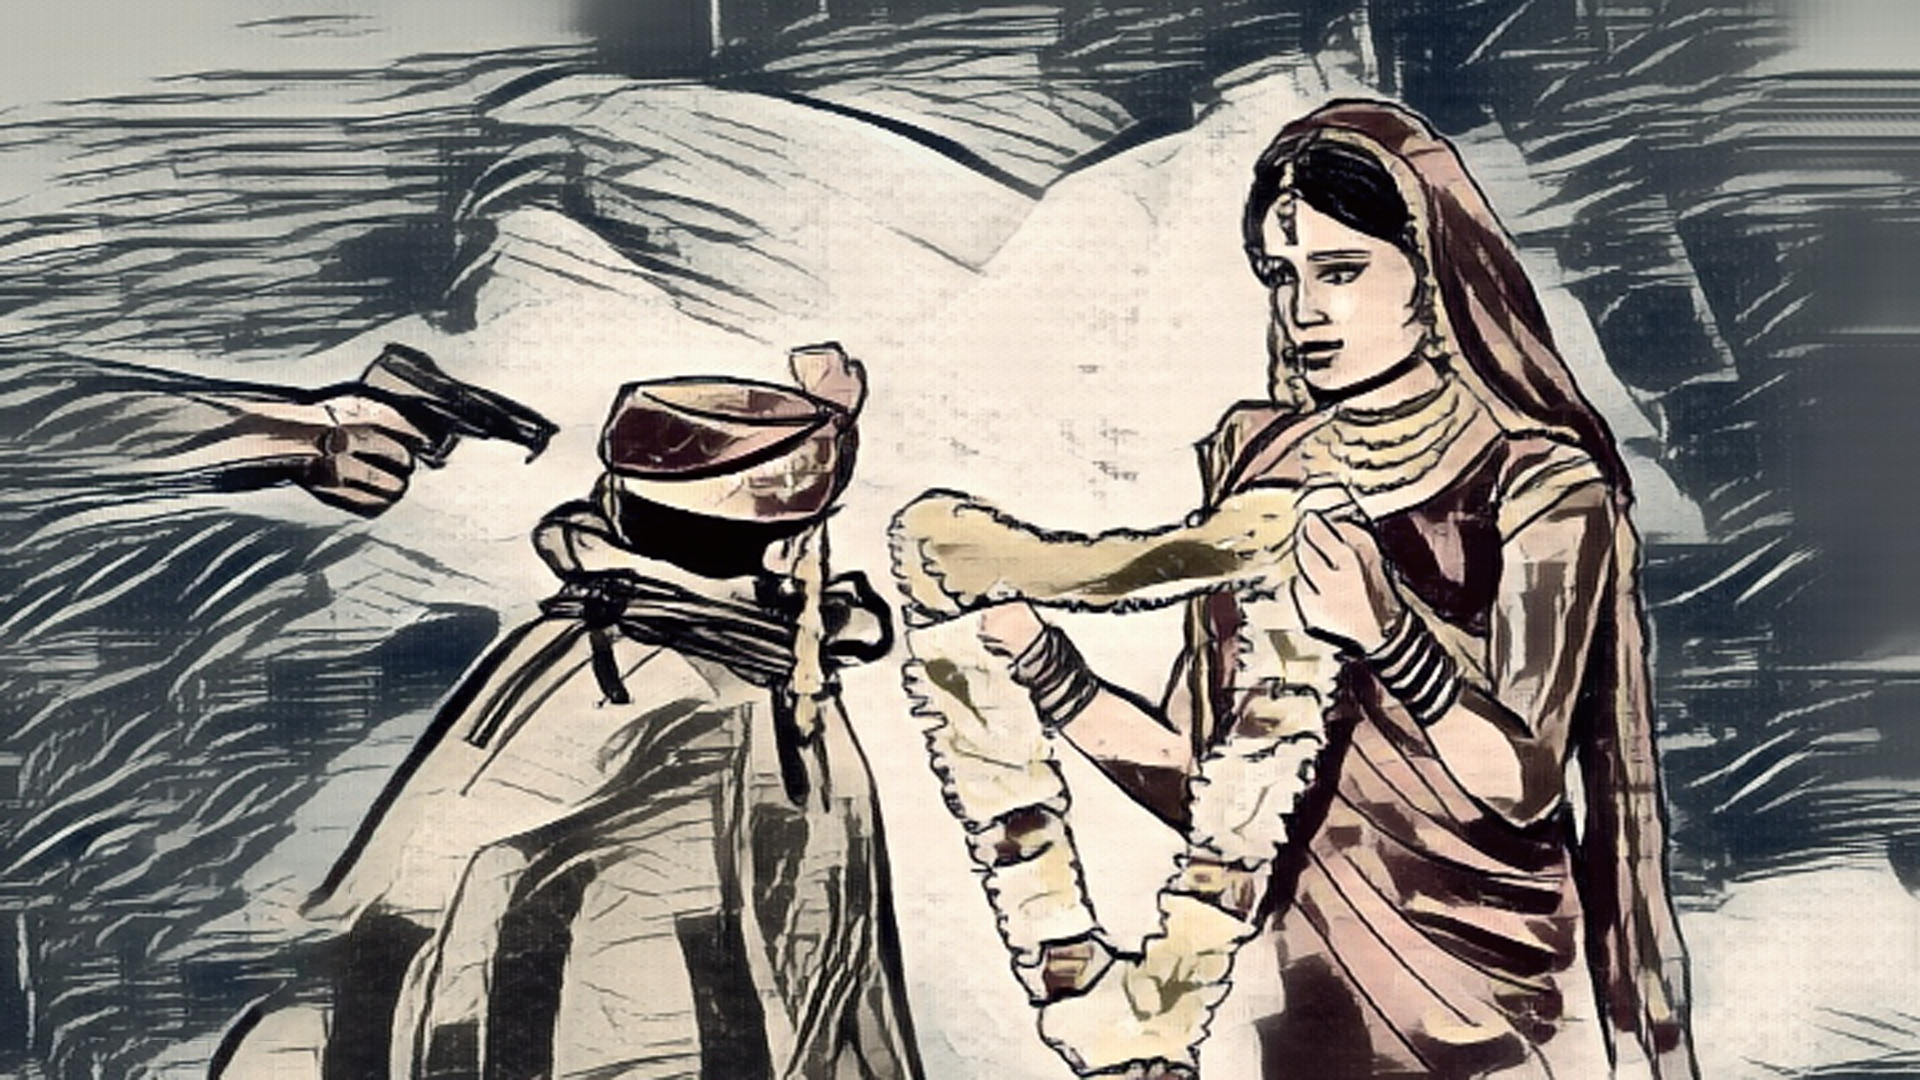 बिहार में बंदूक की नोक पर तो कहीं किडनैप कर जबरन लड़कों को बना दिया जाता है दूल्हा, Getting Married at Gunpoint in Bihar